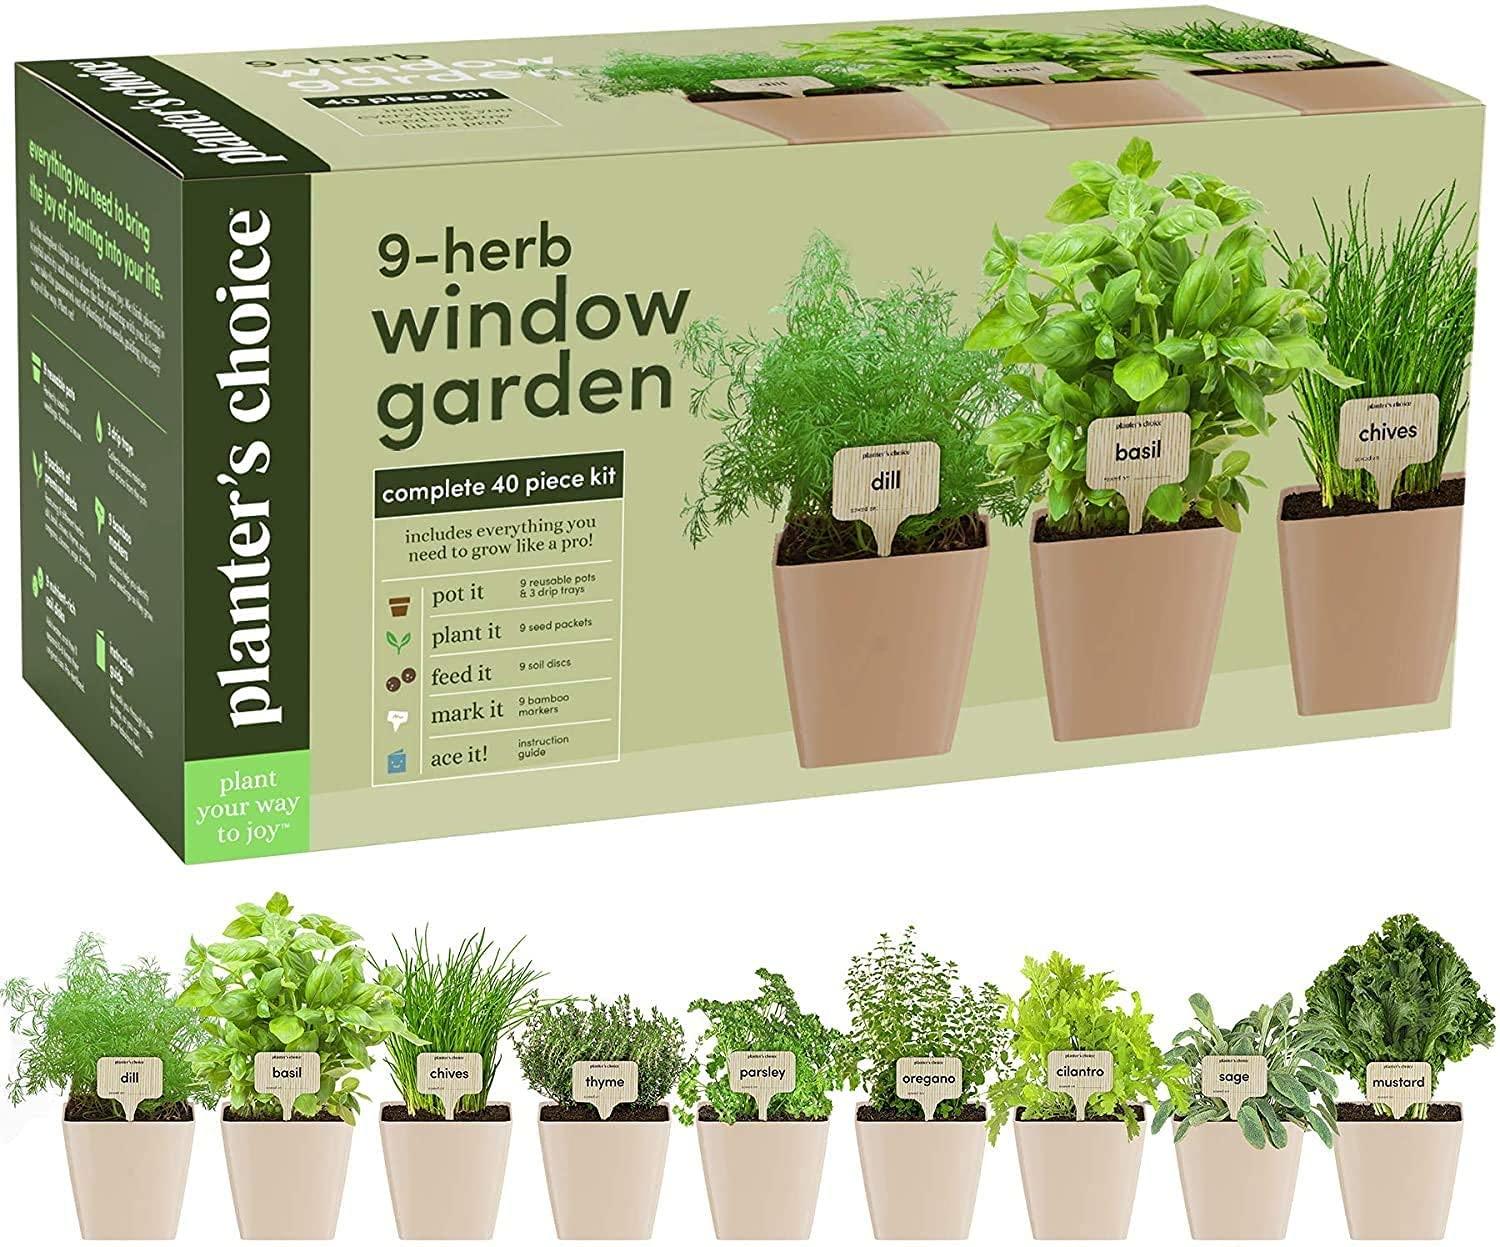 9-herb window garden 